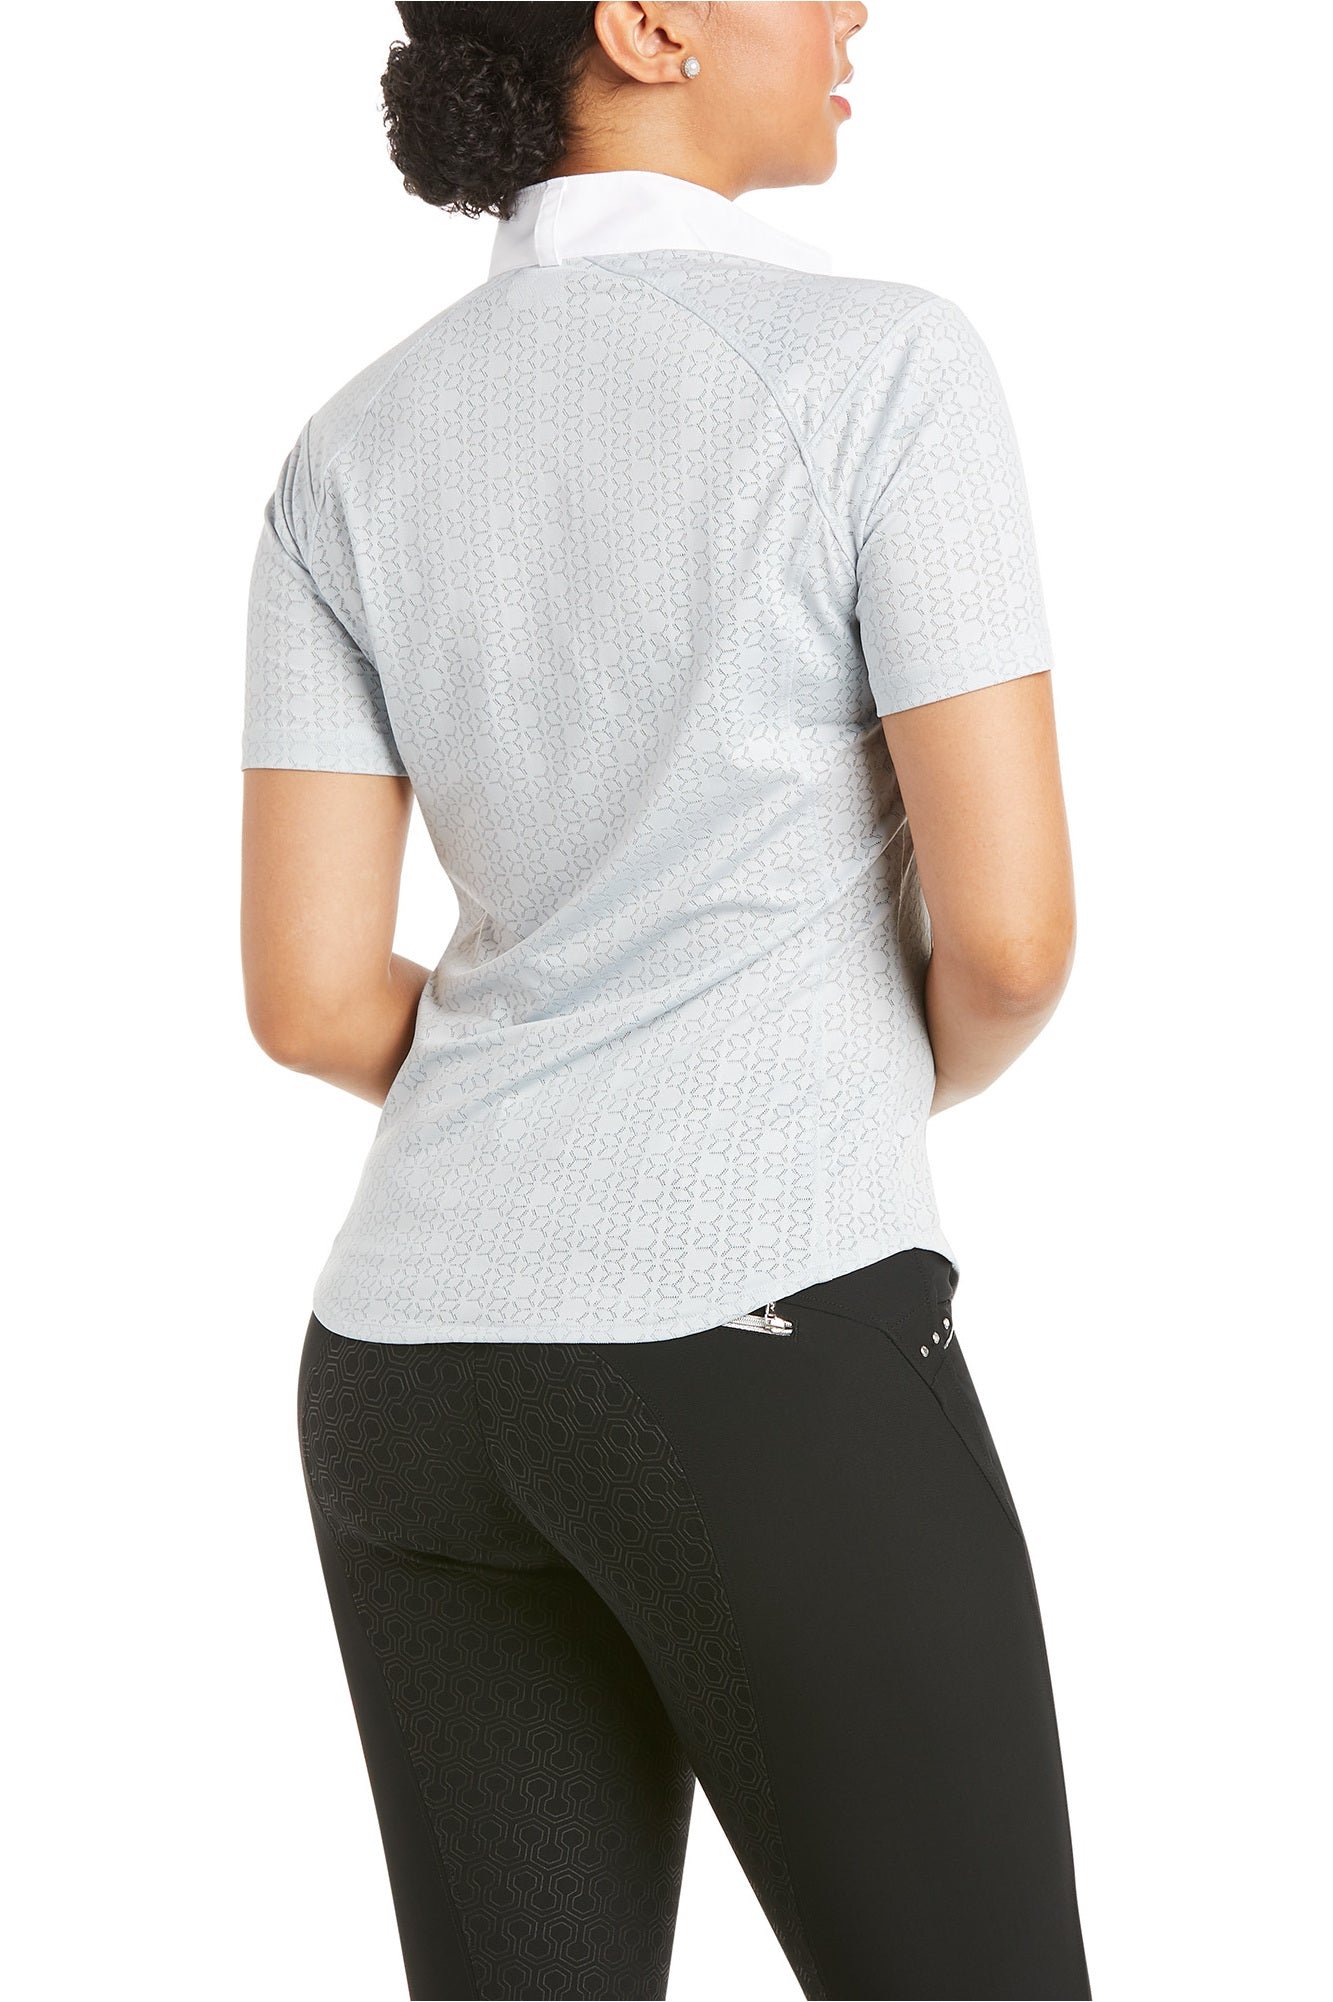 Ariat Womens ShowStopper 3.0 Short Sleeve Shirt